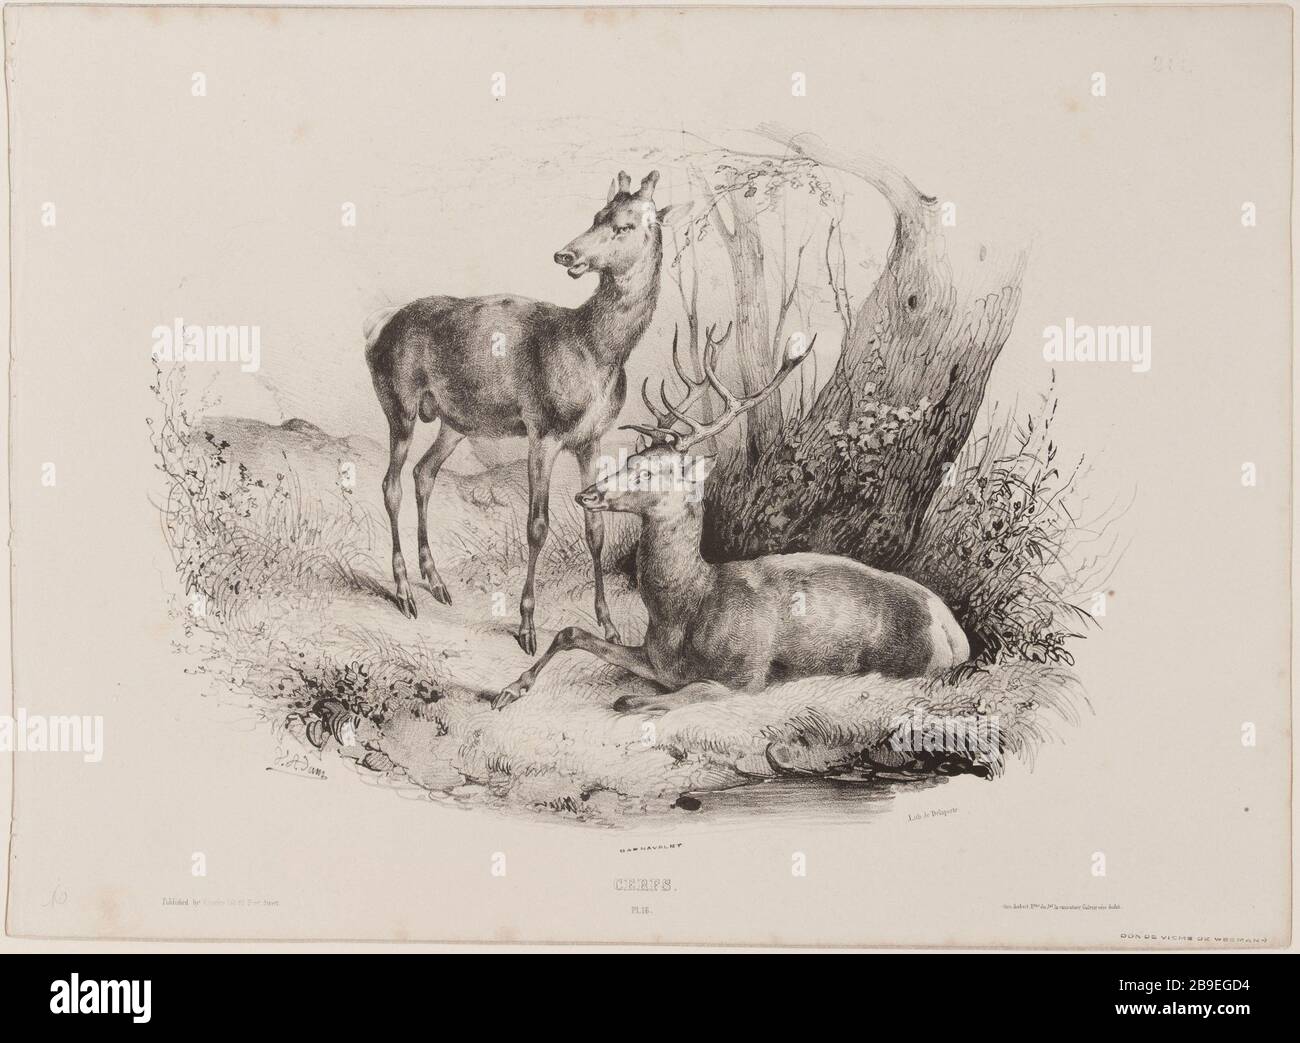 Deer (pl.16) Jean-Victor Vincent Adam (1801-1866), peintre et lithographe français. Cerfs (pl.16). Lithographie au crayon, XIXème siècle. Paris, musée Carnavalet. Stock Photo